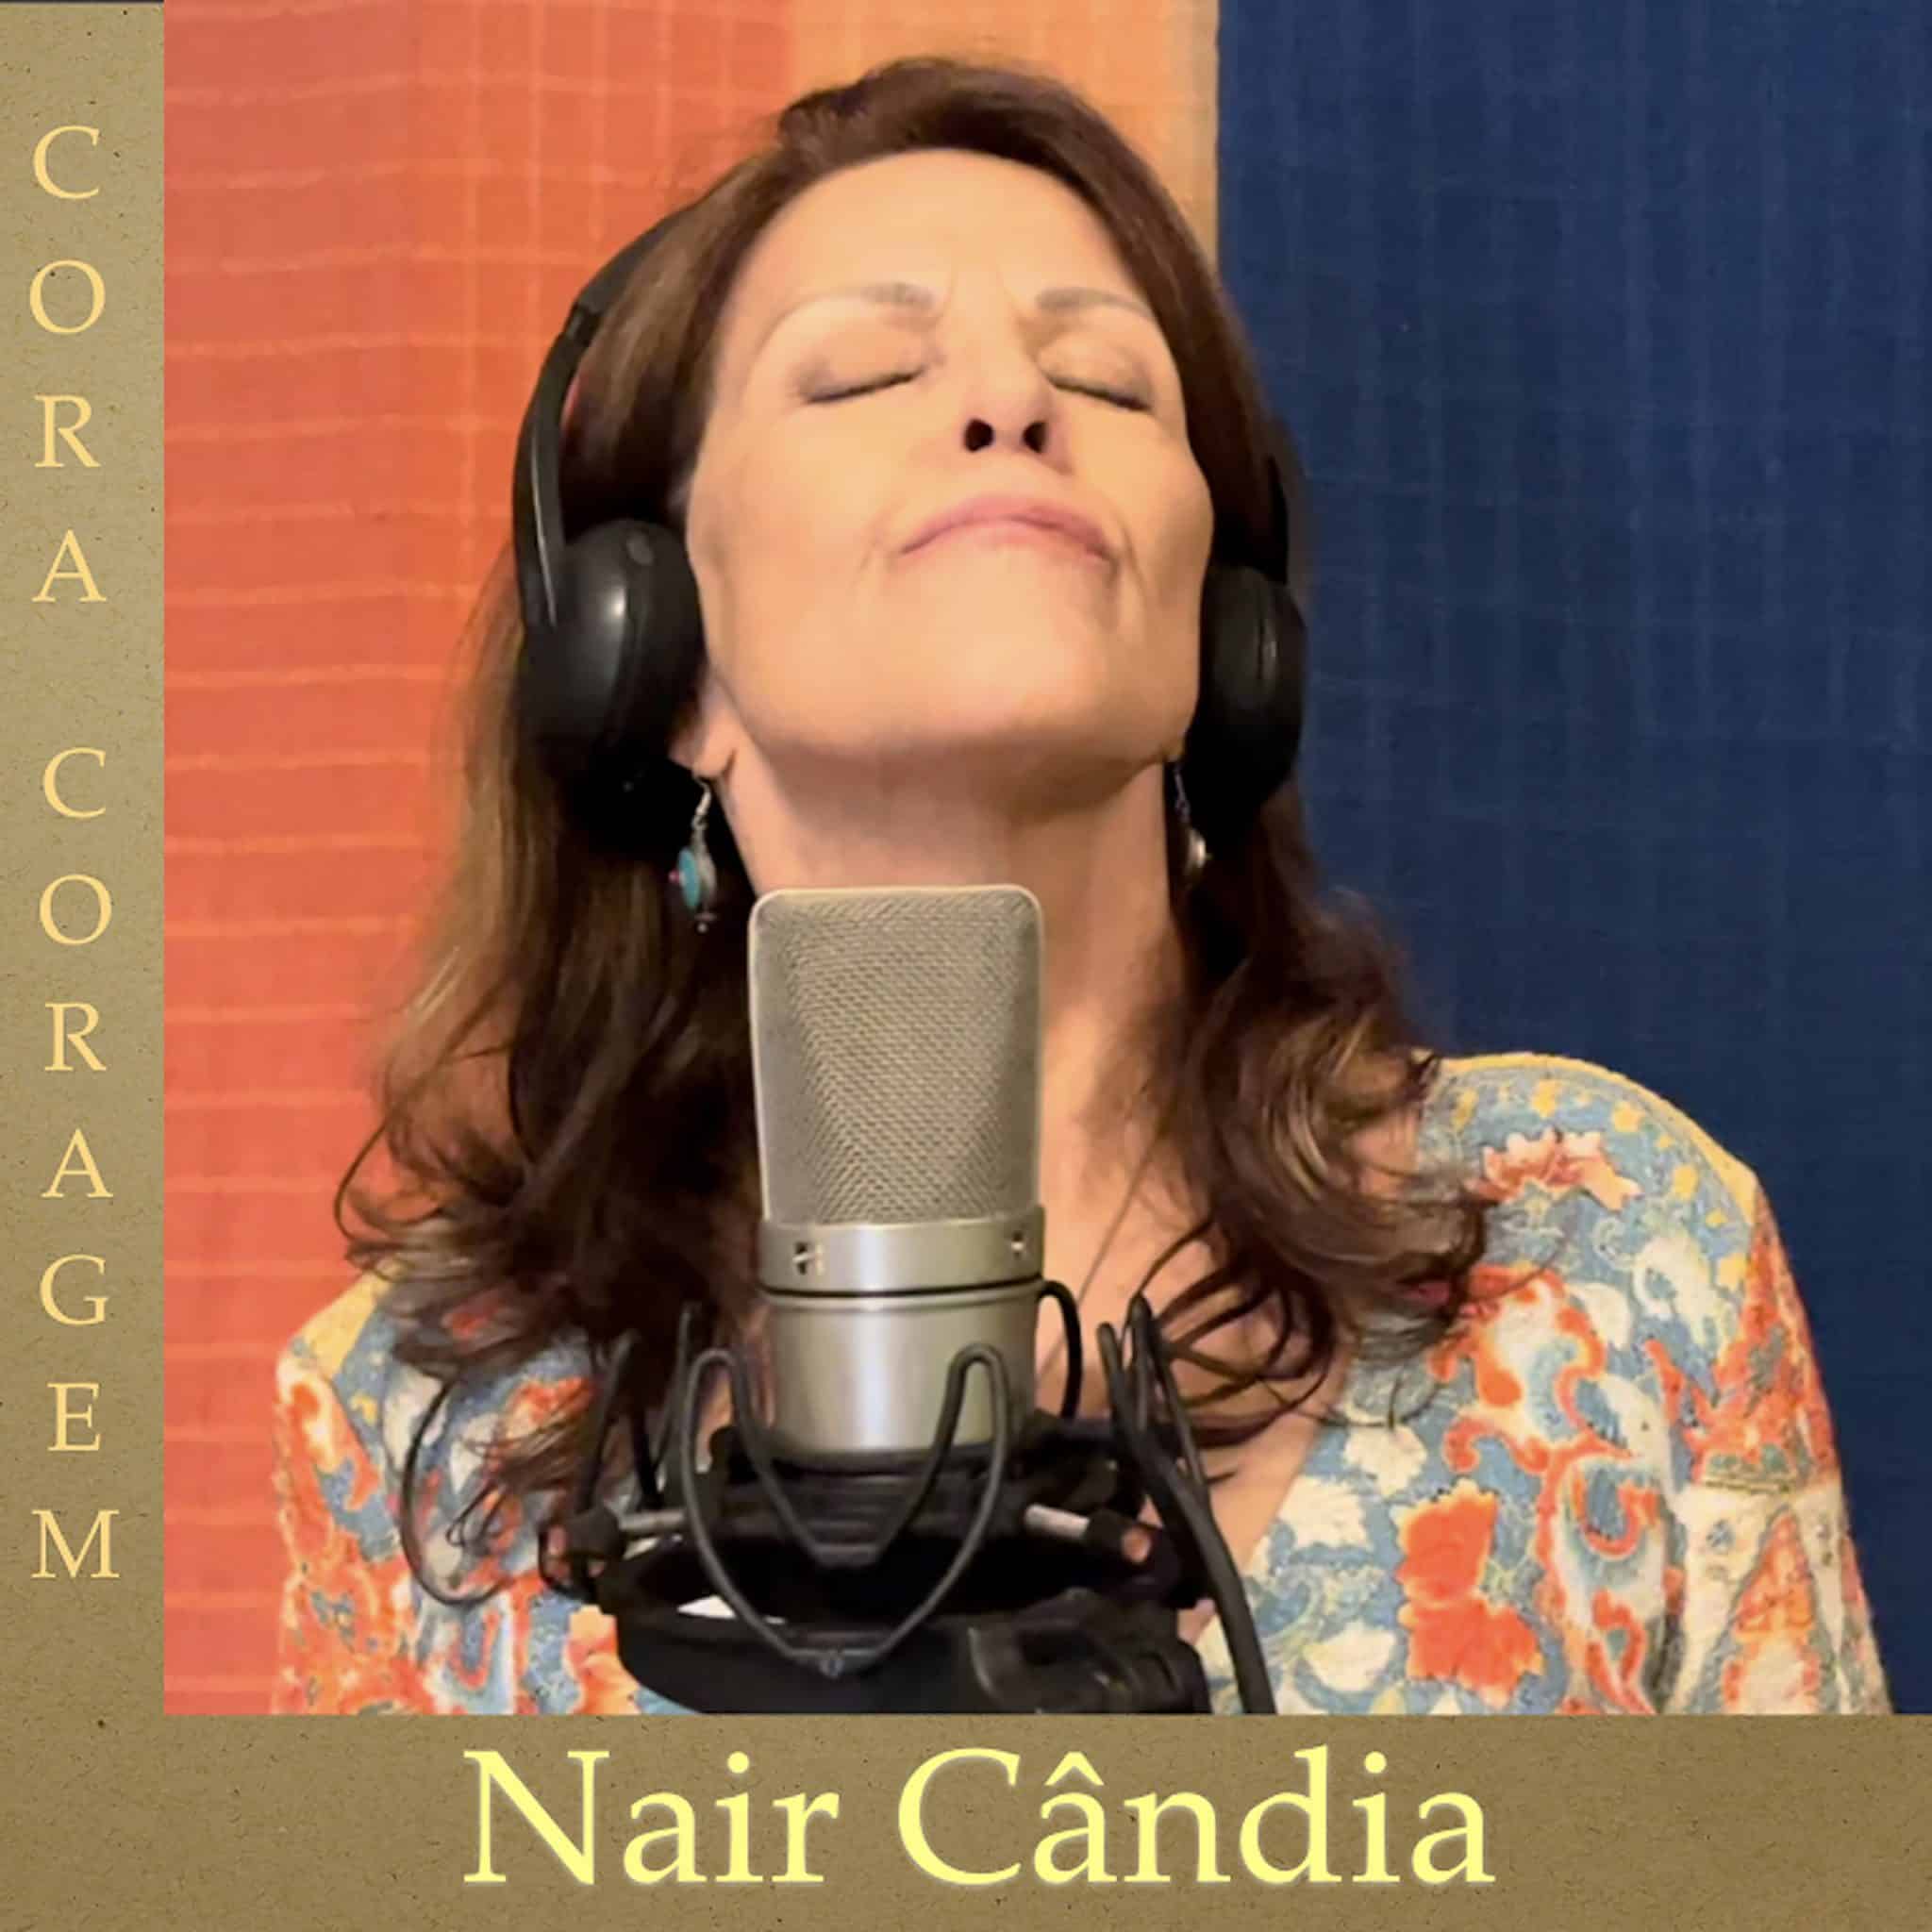 revistaprosaversoearte.com - Nair Cândia lança o single 'Cora Coragem', música do maestro Jaime Alem, em homenagem a Cora Coralina